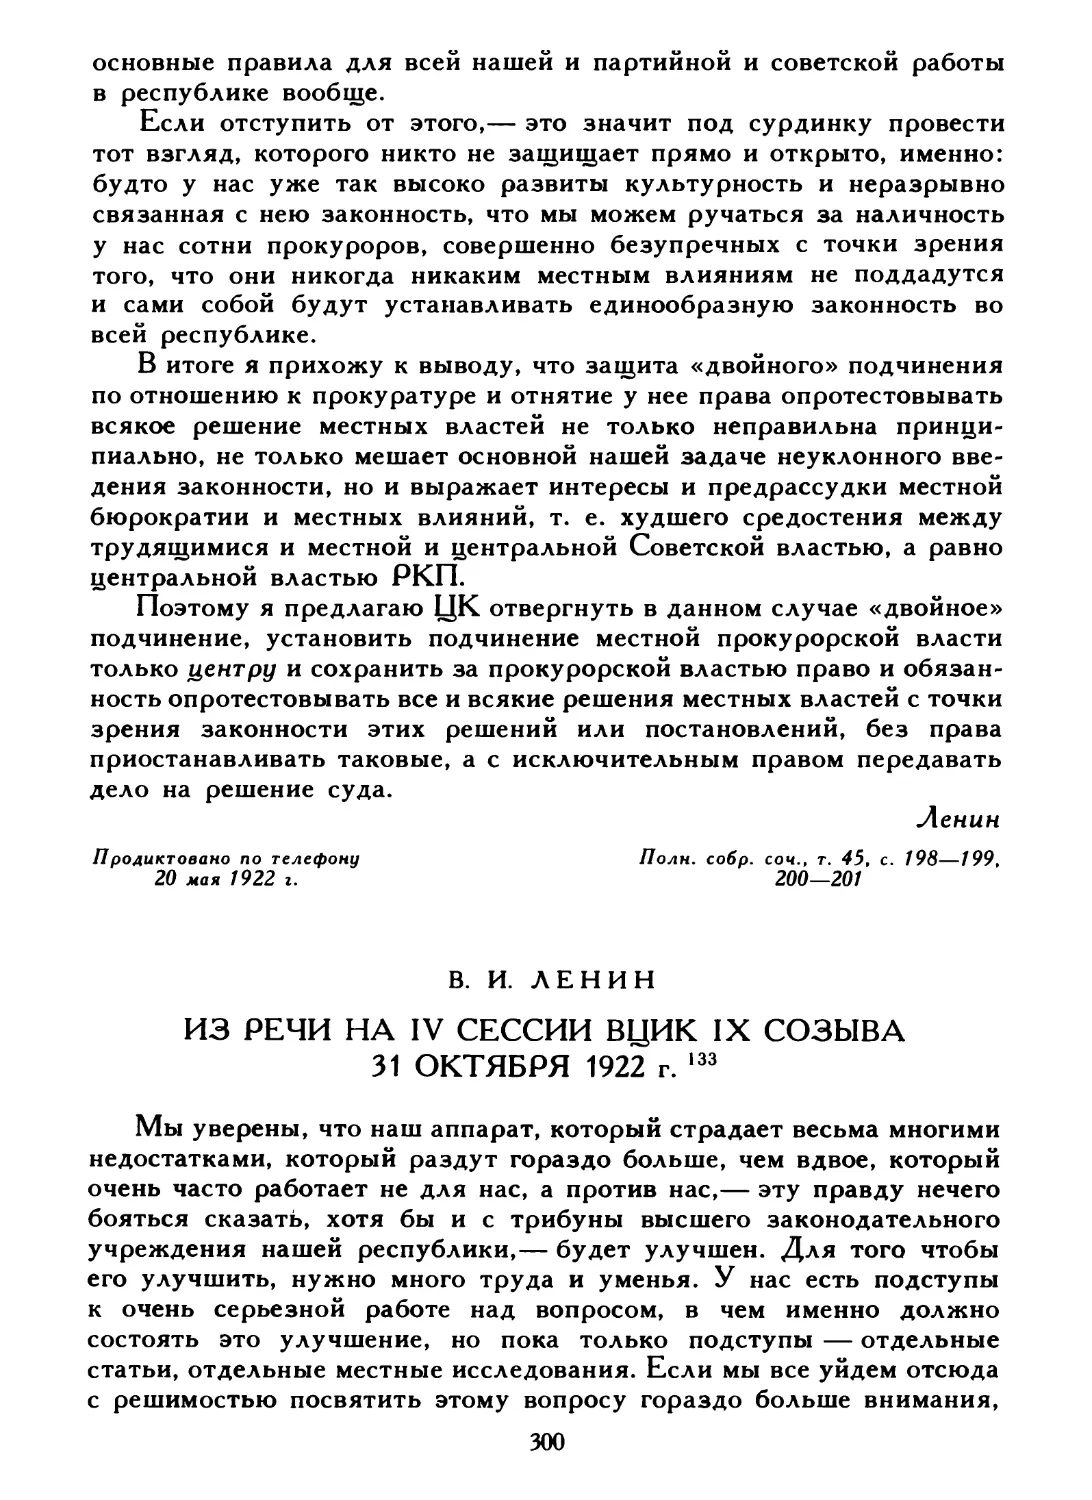 В. И. Ленин. Из речи на IV сессии ВЦИК IX созыва 31 октября 1922 г.